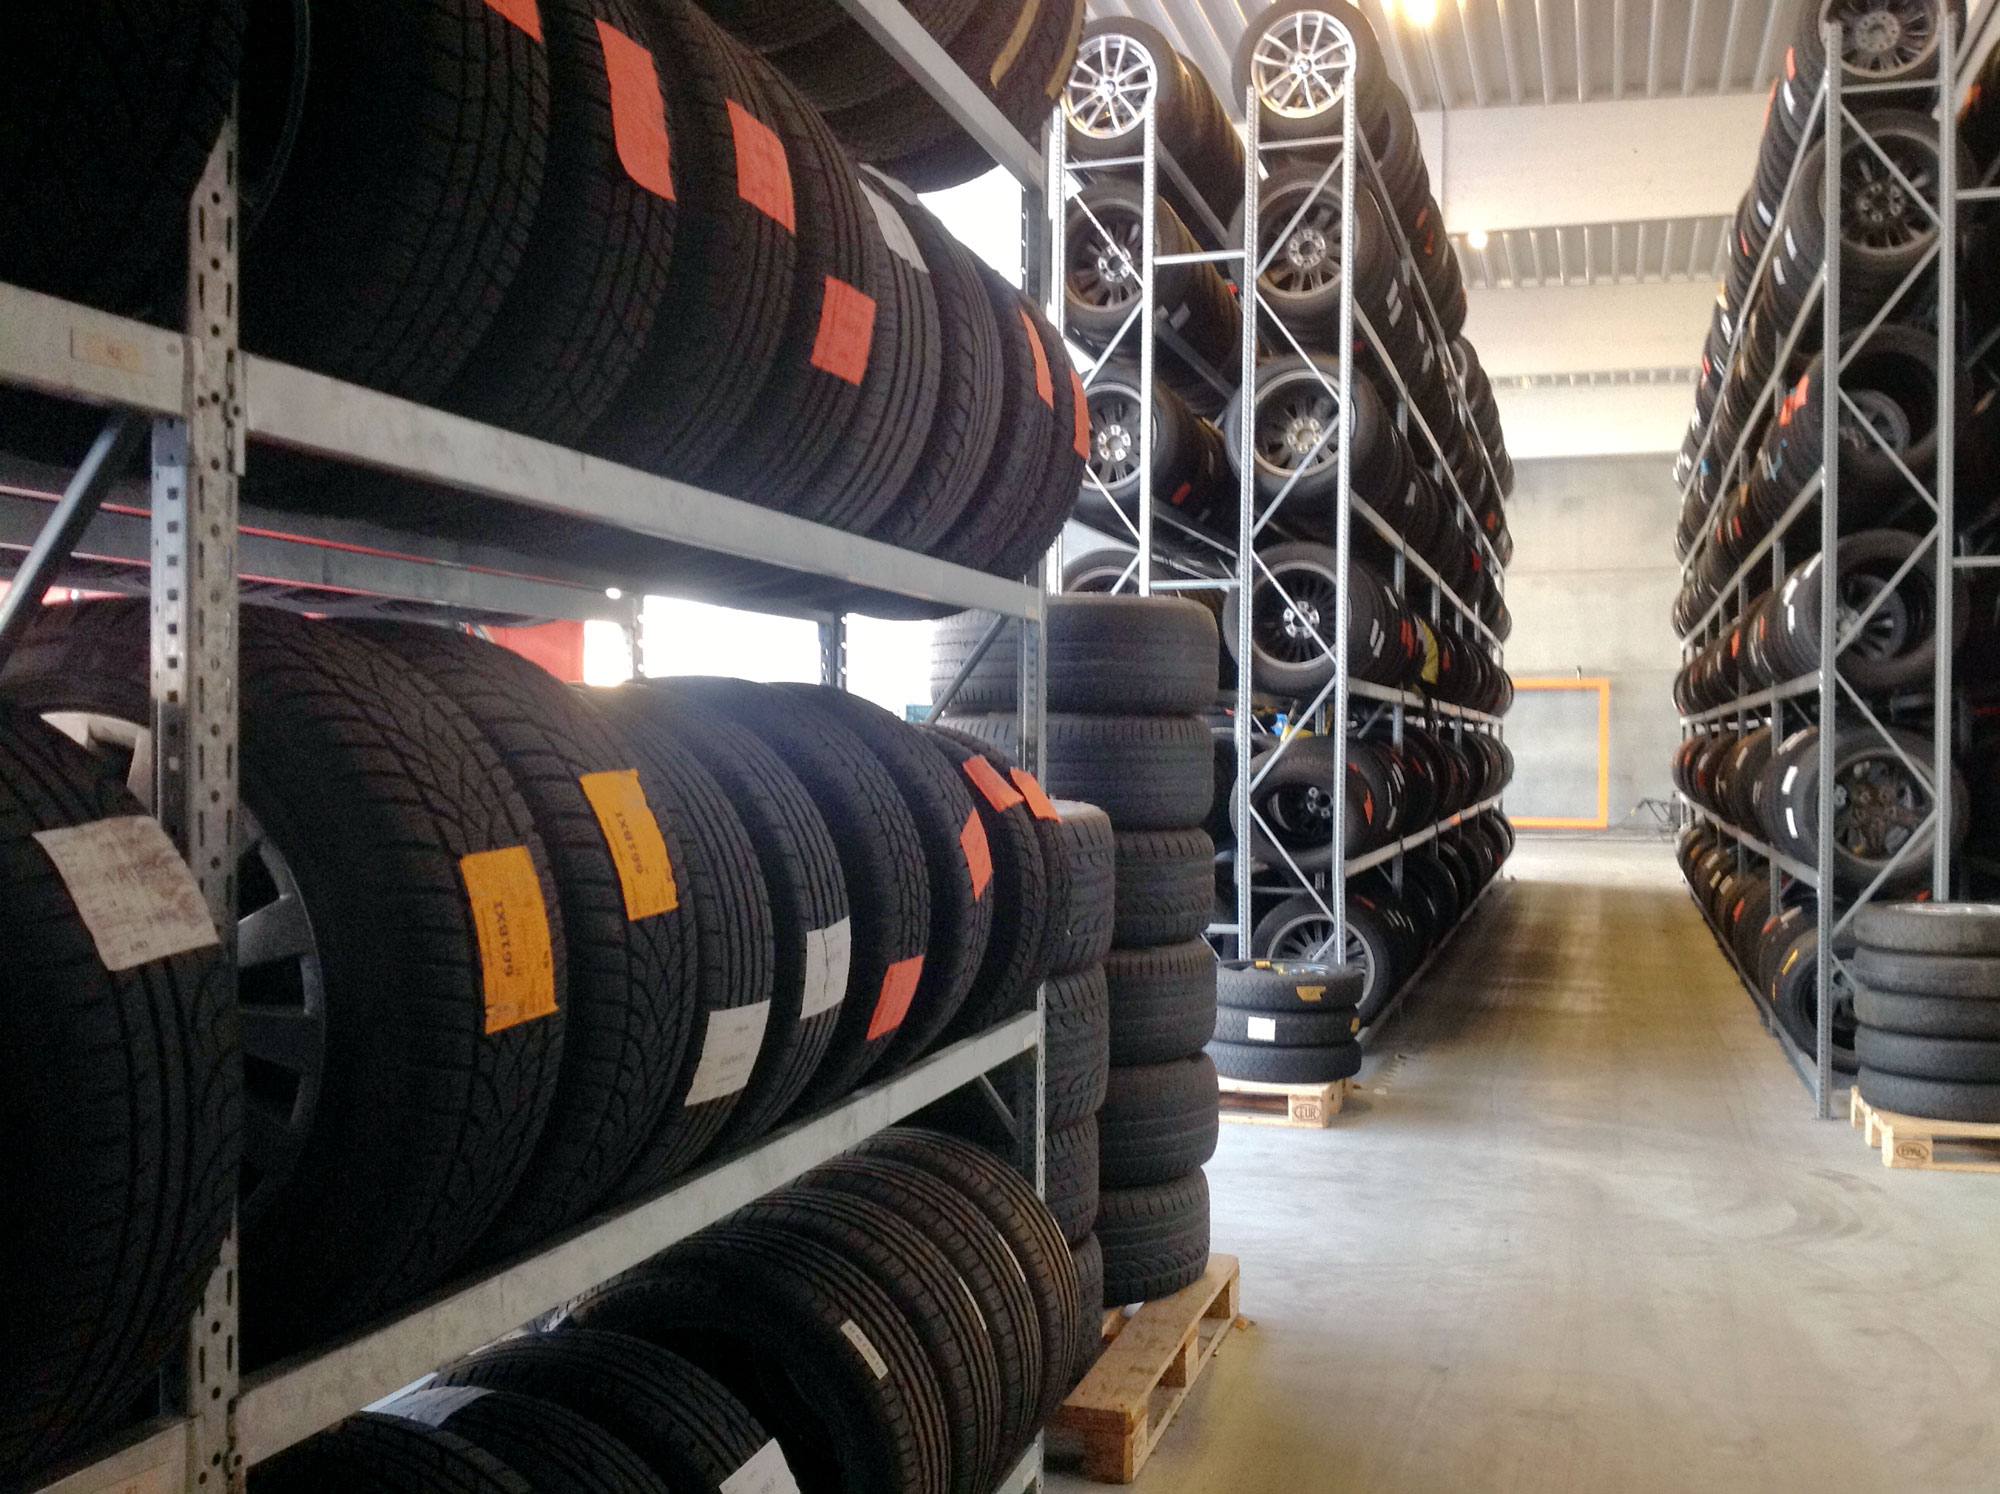 Regály na uskladnenie pneumatíkEfektívne skladovanie všetkých pneumatík Ste profesionálom v automobilovej oblasti a chceli by ste si zorganizovať skladovaciu a pracovnú oblasť? Vďaka poloťažkým regálom so špeciálnymi nosníkmi dokážete uskladniť pneumatiky bez ich poškodenia a narušenia ich tvaru. Policové regály stow Minirack sú ideálnym riešením na skladovanie pneumatík a diskov. Nosníky navrhnuté na zákazku bránia odkotúľaniu pneumatík. Vertikálne uskladnenie pneumatík umožňuje uskladniť väčší počet pneum